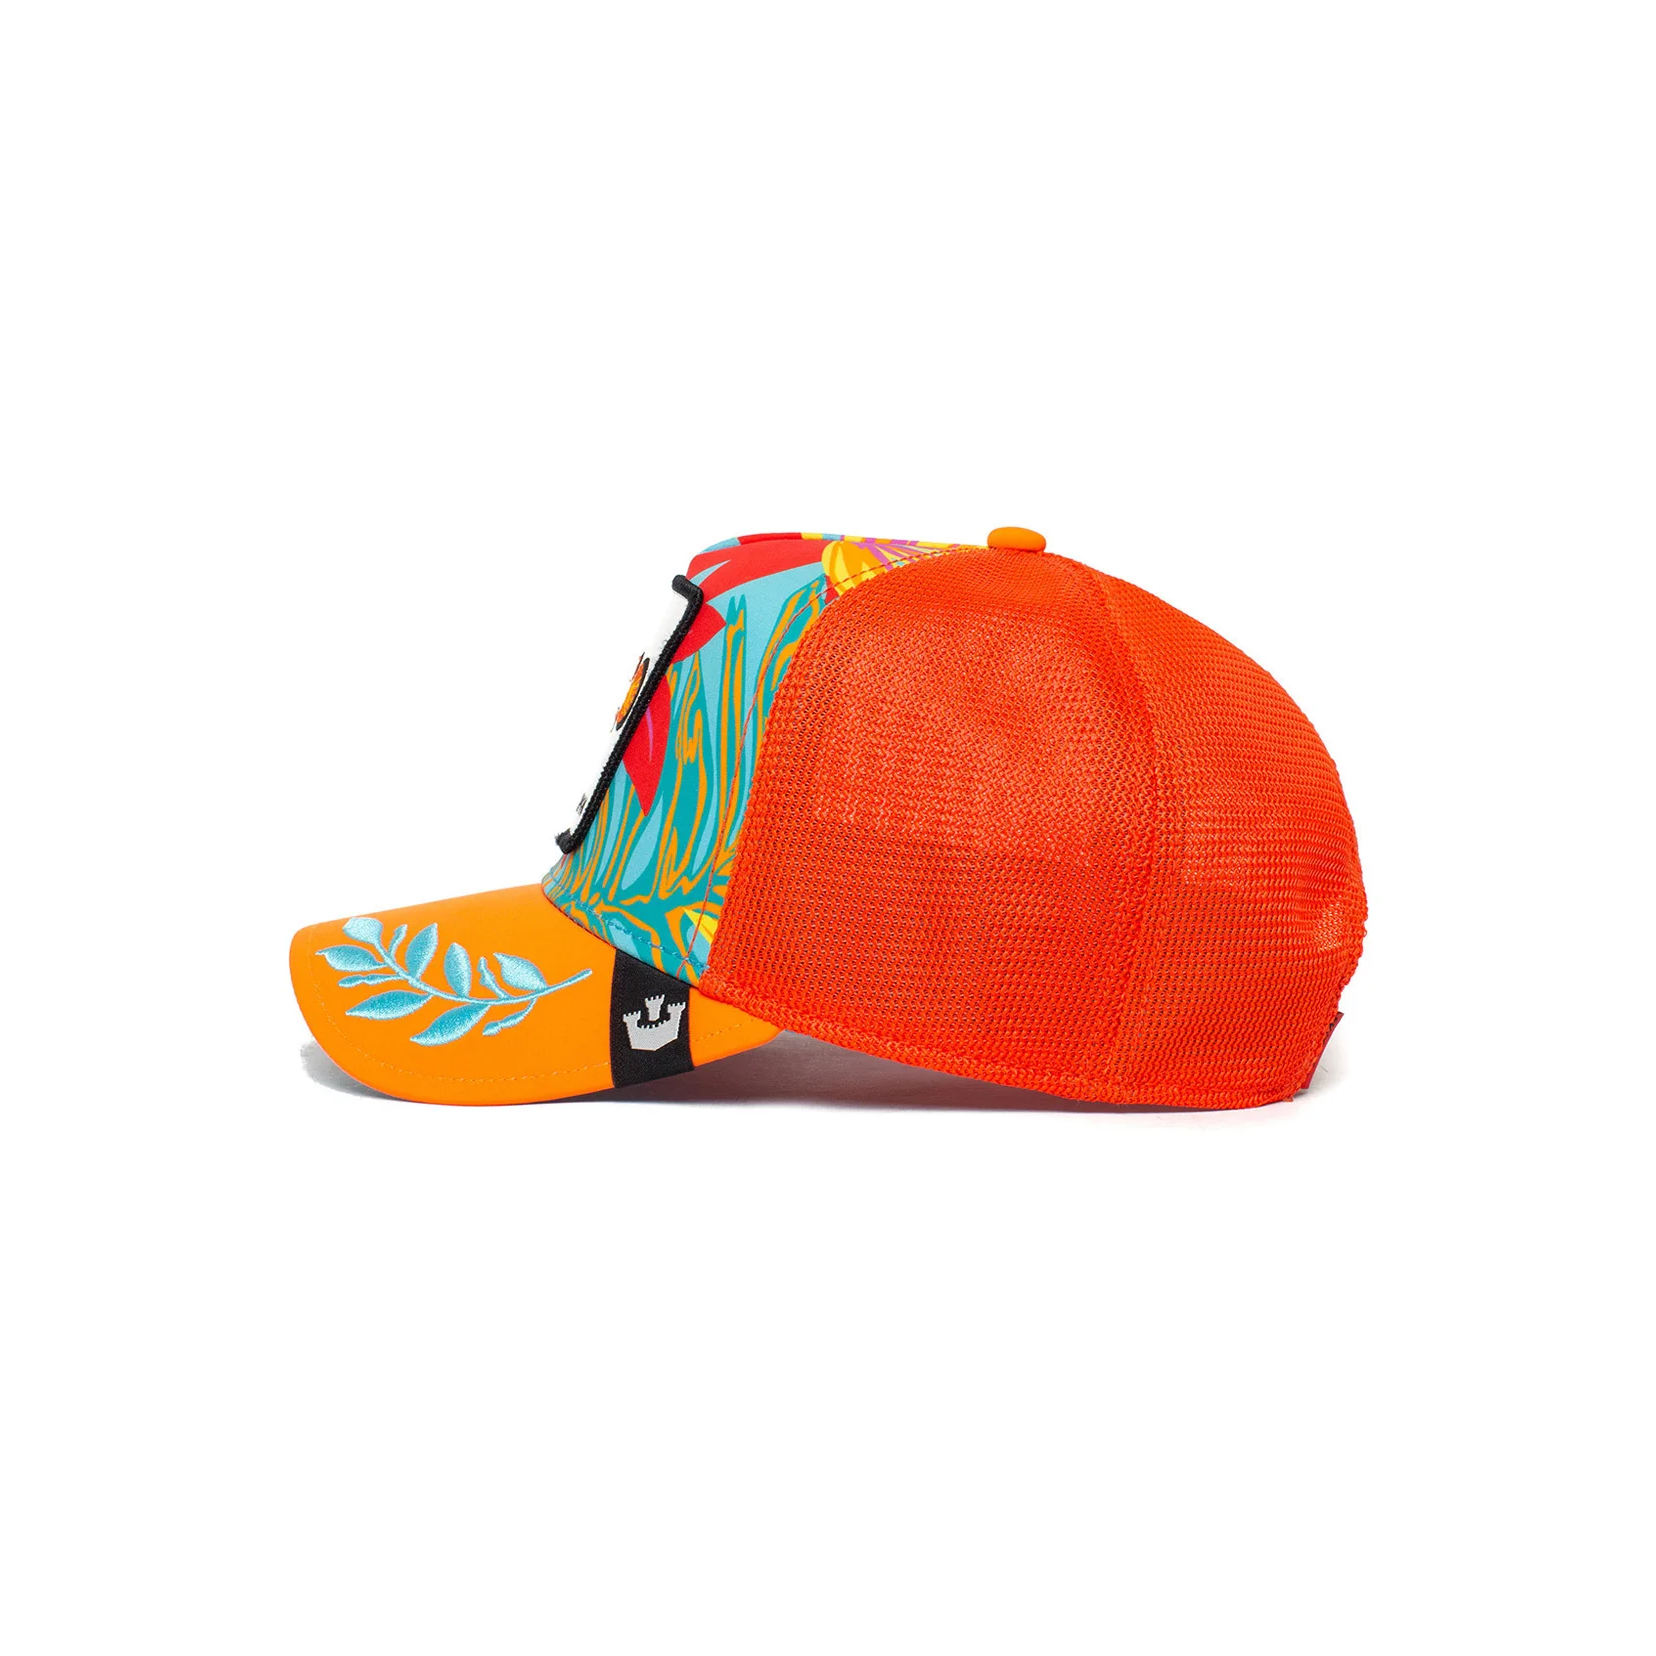 Trucker keps med en anemone fisk på i orange färg, sidan